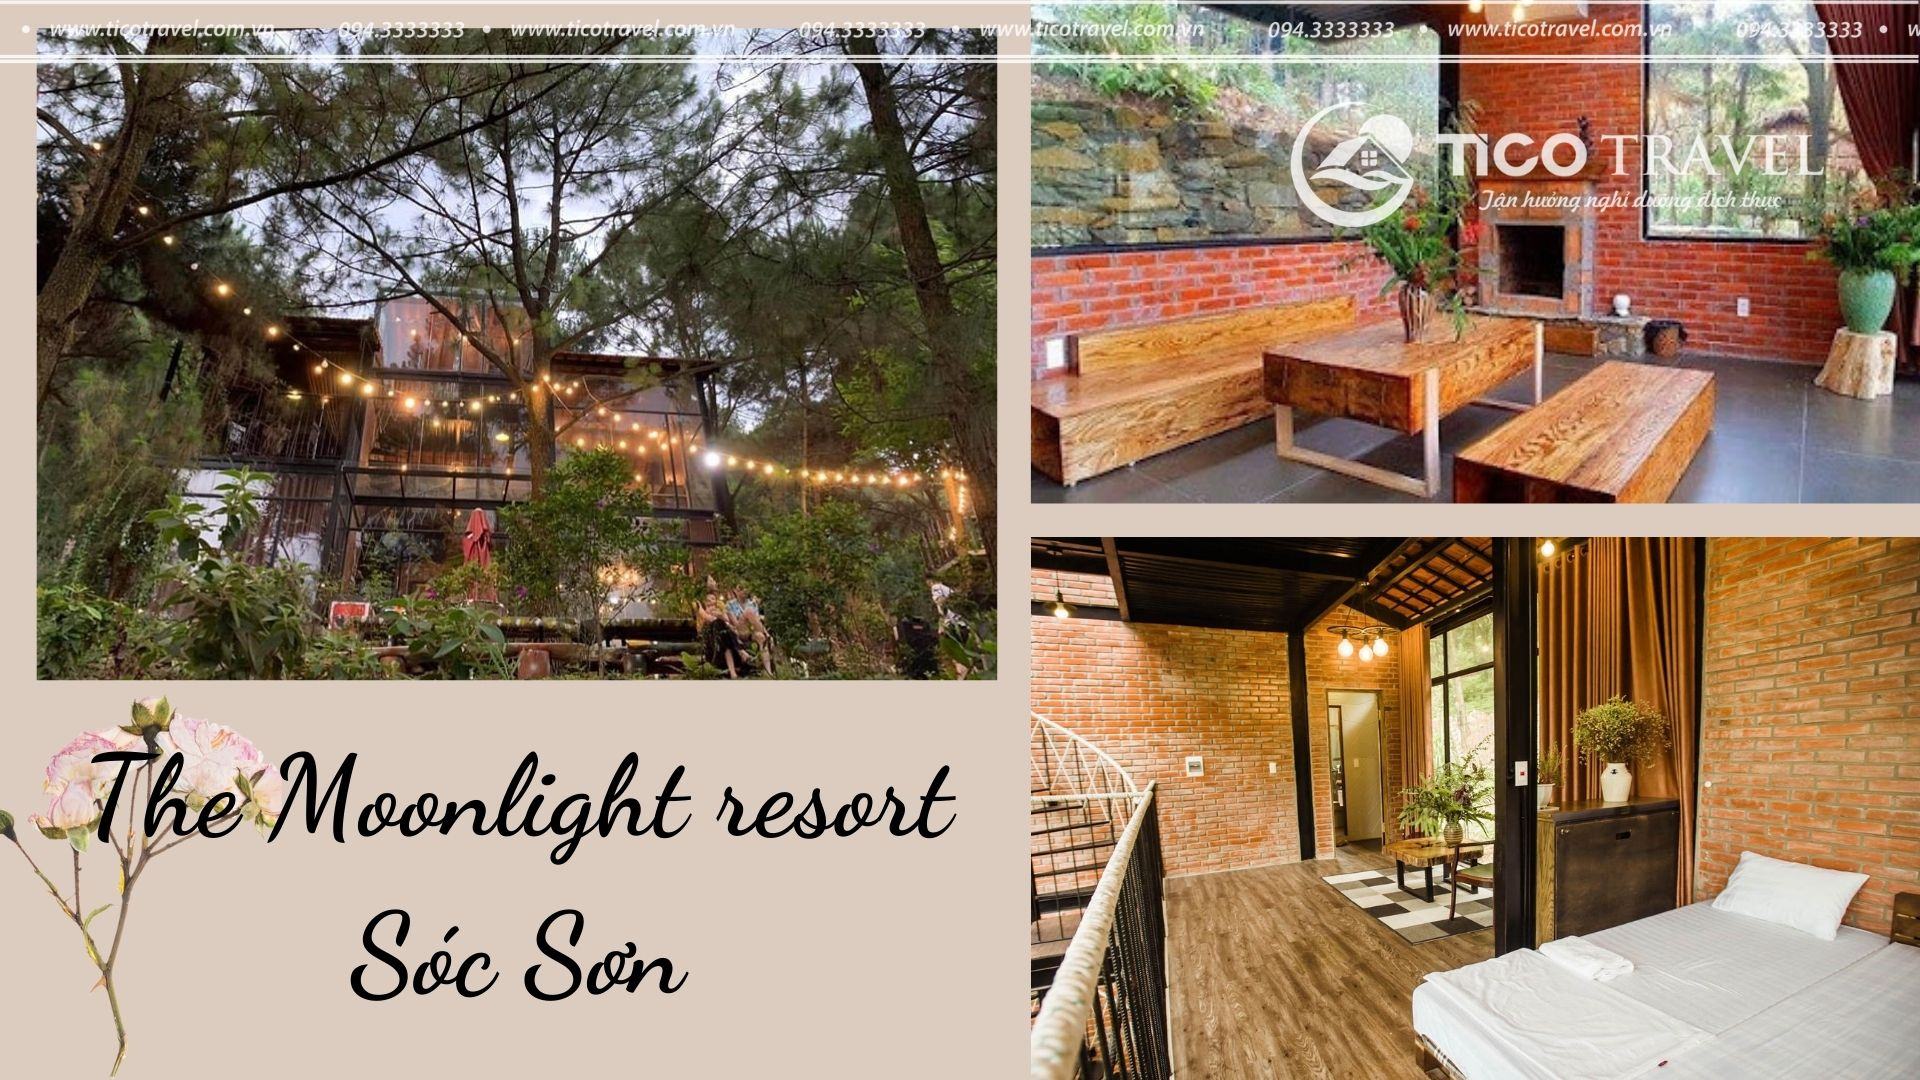 ảnh chụp Resort Sóc Sơn - Tico The Moonlight 